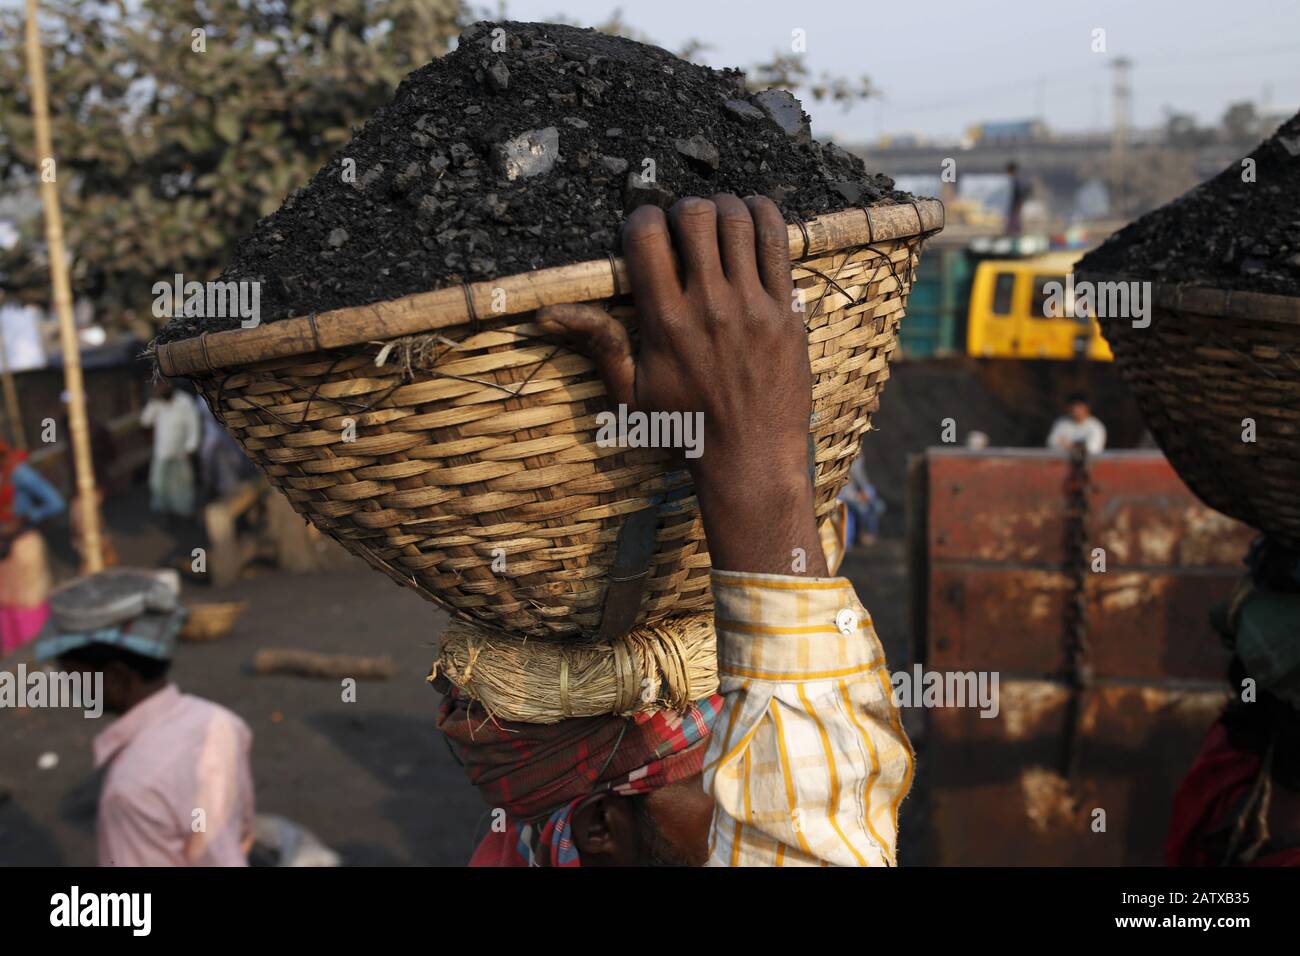 Dhaka, Bangladesh. 5 février 2020. Un ouvrier décharge le charbon dans un panier sur sa tête à la rive de la rivière Turag. Crédit: Md Mehedi Hasan/Zuma Wire/Alay Live News Banque D'Images